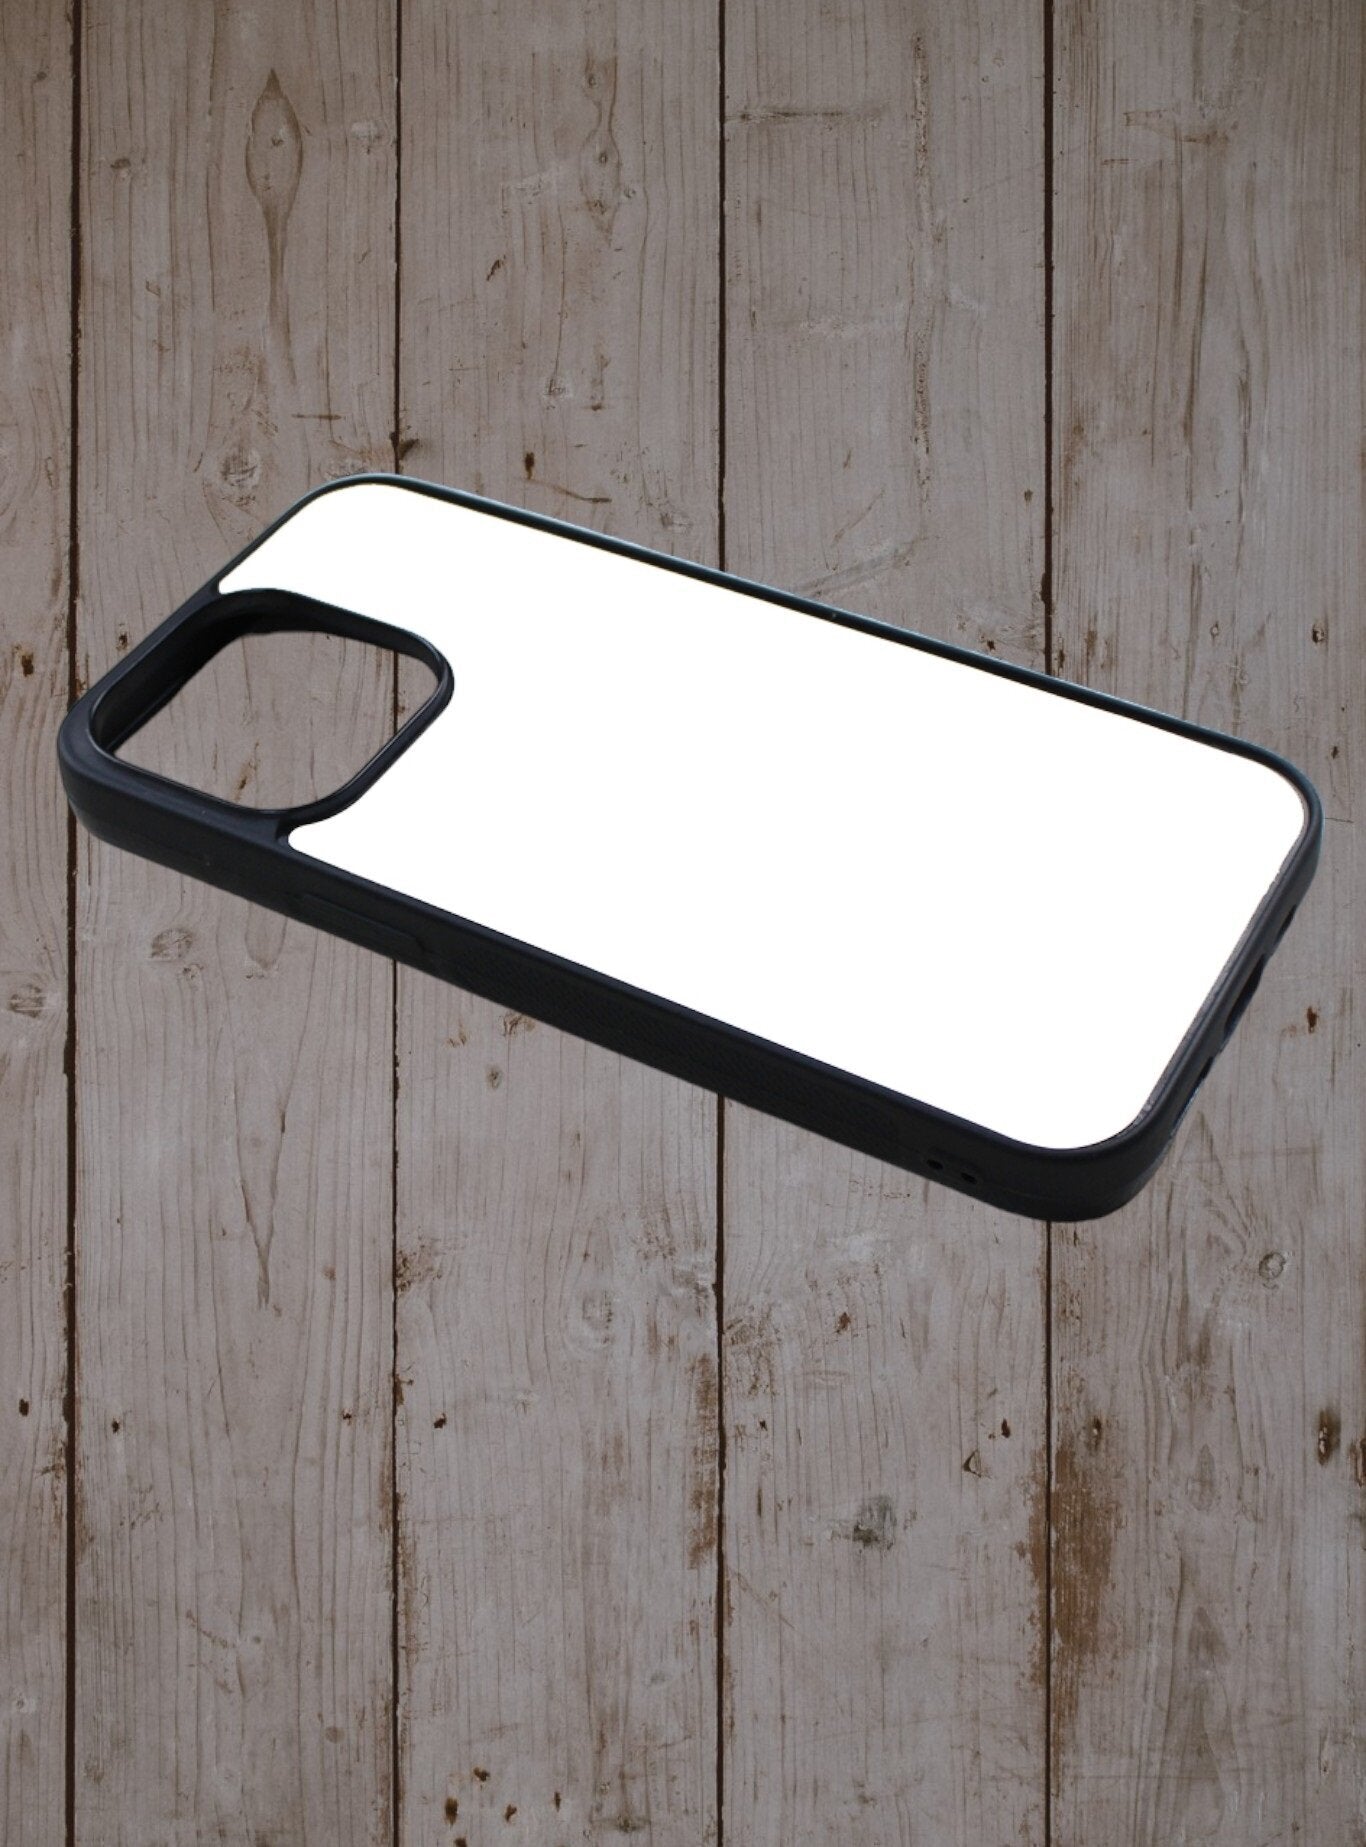 Iphone case - Dice